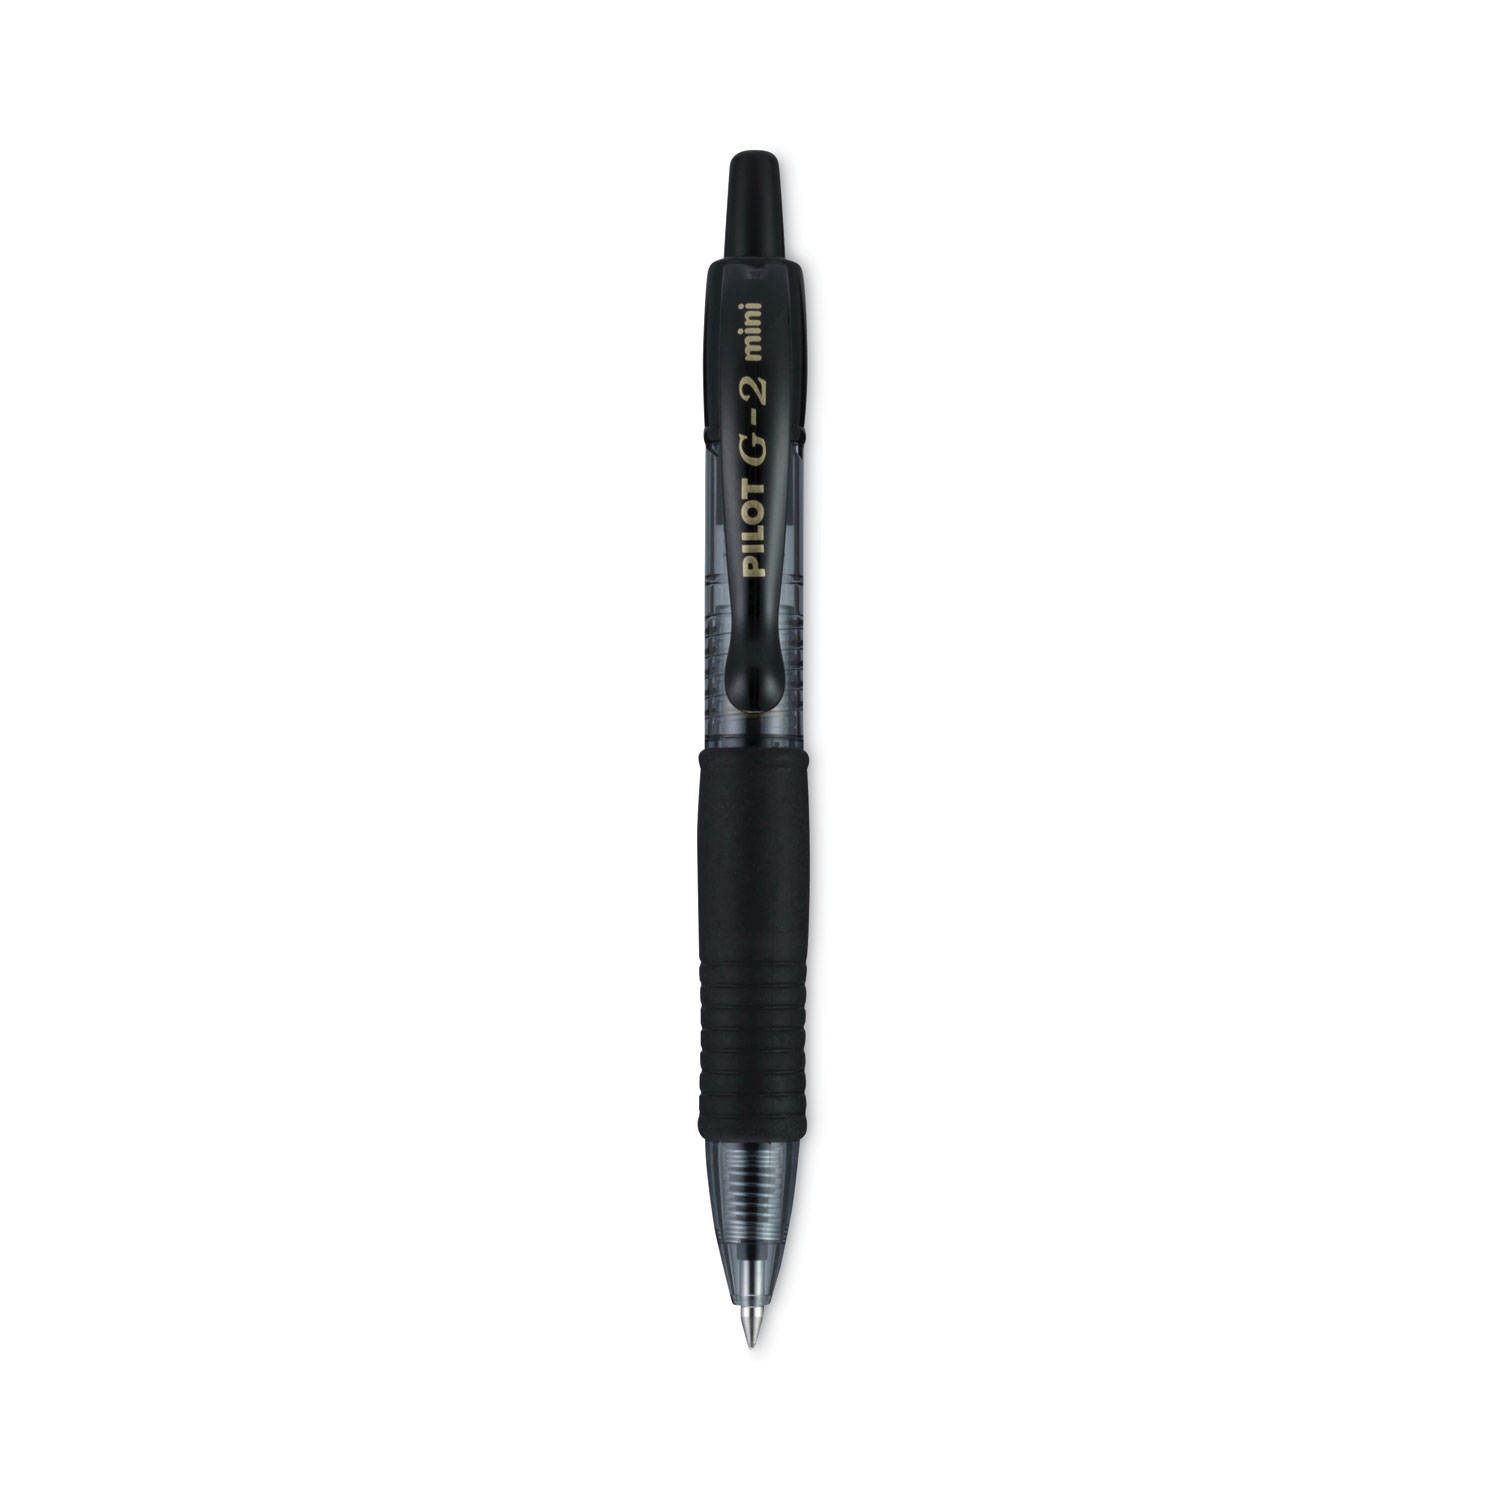 Pilot G2 Pens, Gel Roller, Fine Point 0.7 mm, Black, School Supplies